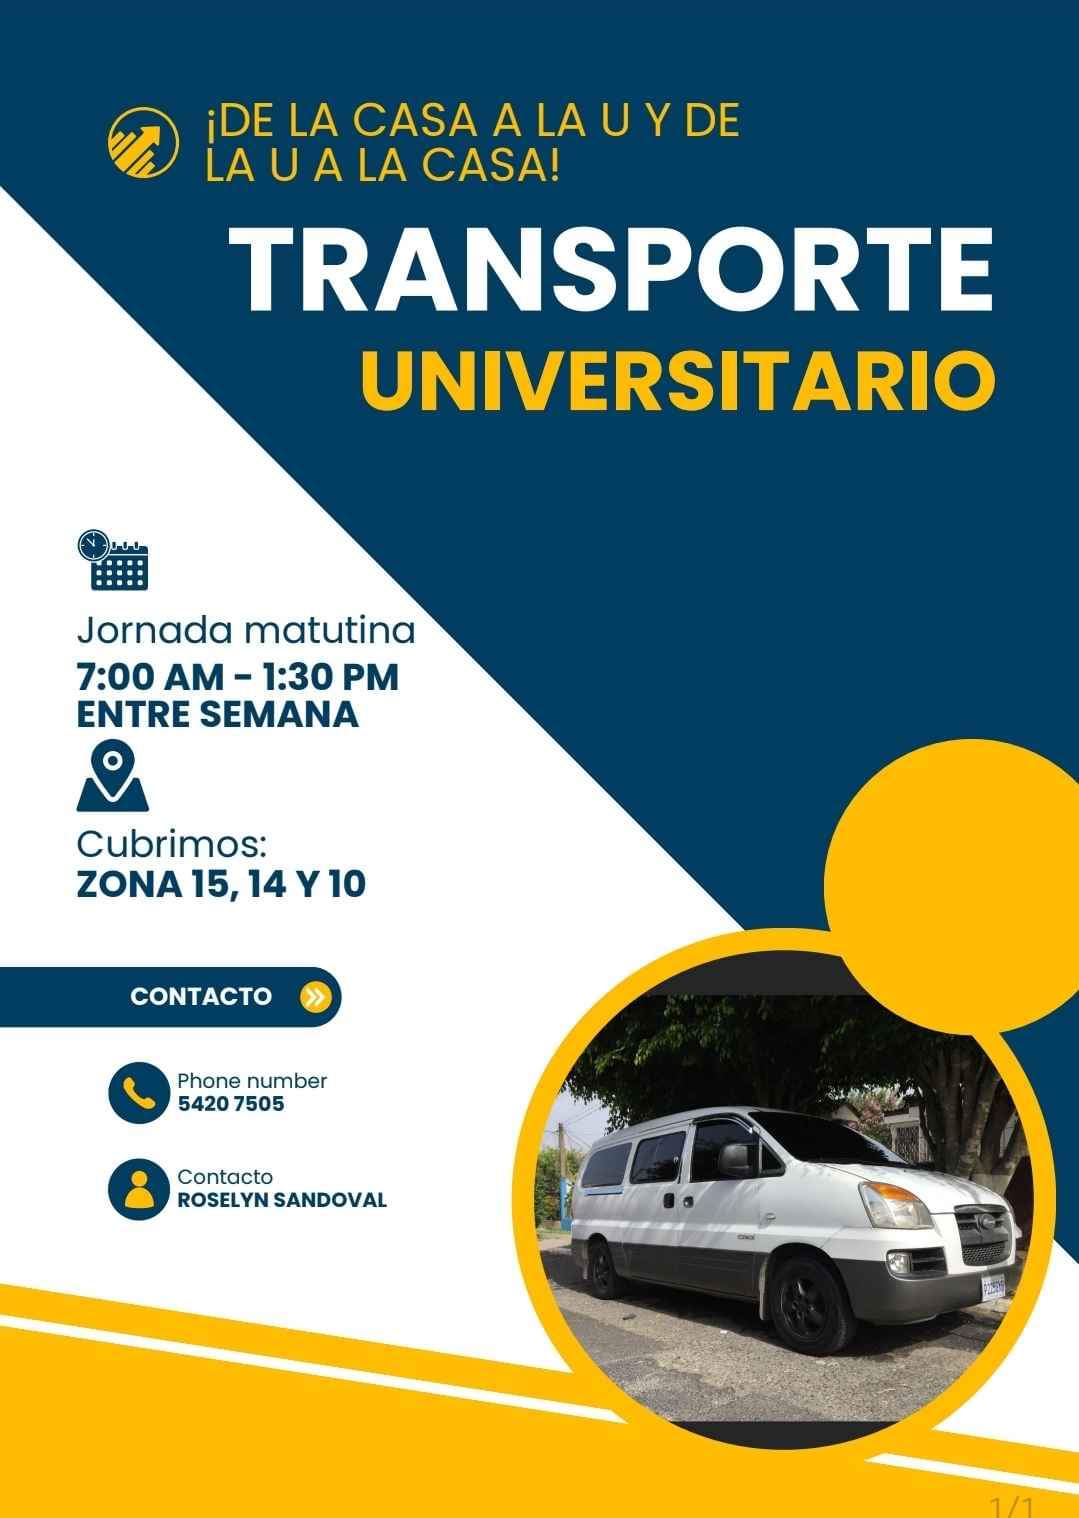 Transporte universitario!
 Universidad Rafael Landivar
 Diario y plan fin de sem